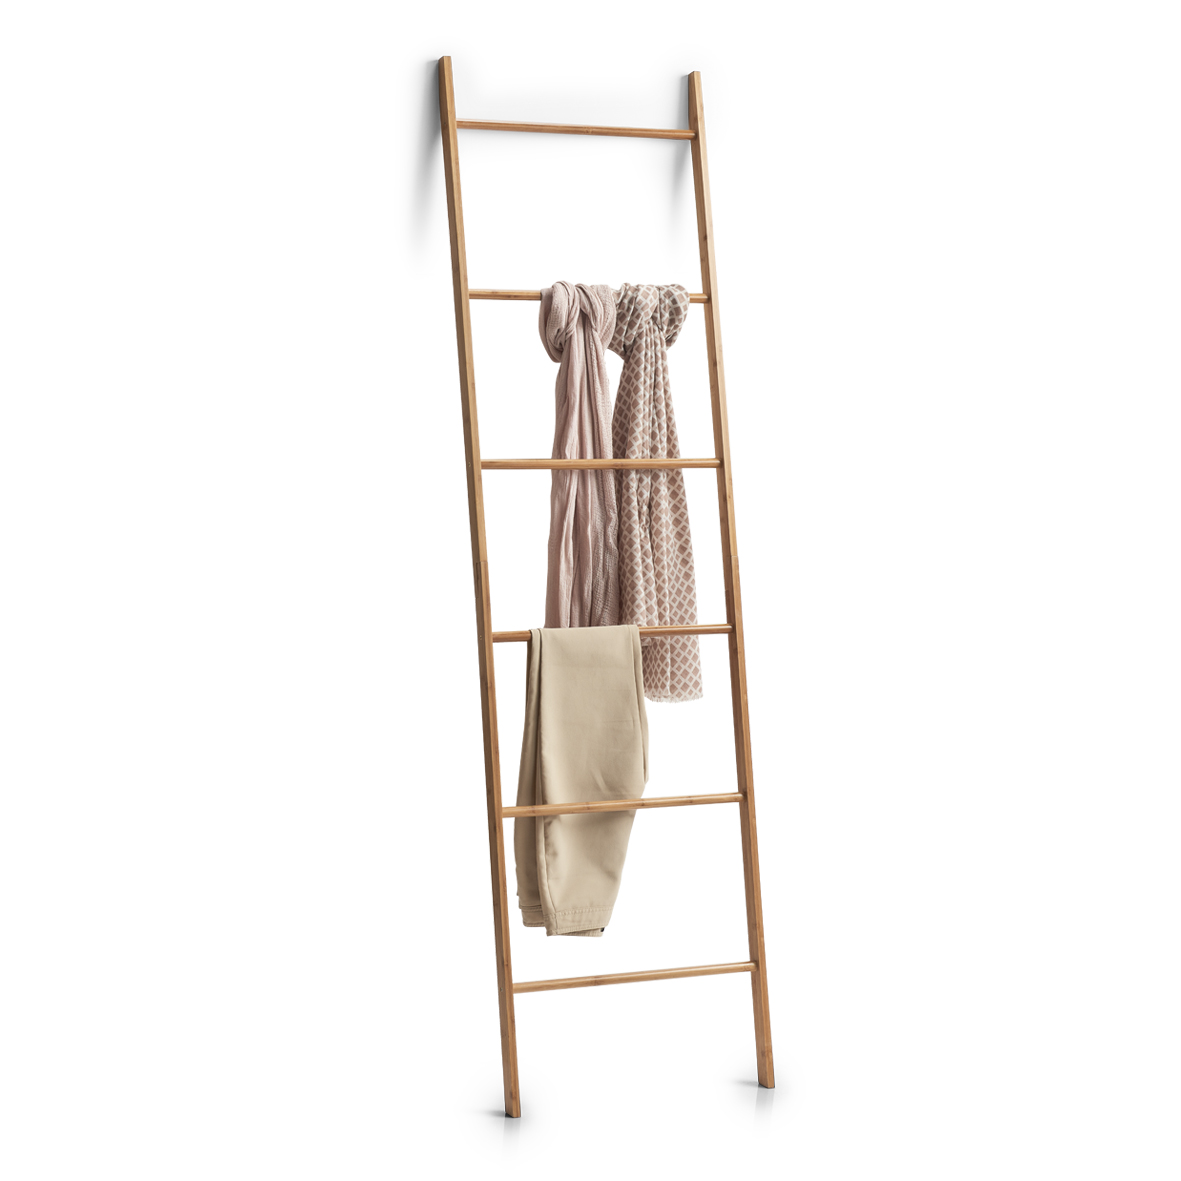 Leiter-Handtuchhalter, Bamboo lackiert, 50x3,5x182,5 cm. Farbe: natur. Entdecken Sie mit unserem Handtuchhalter eine neue und innovative